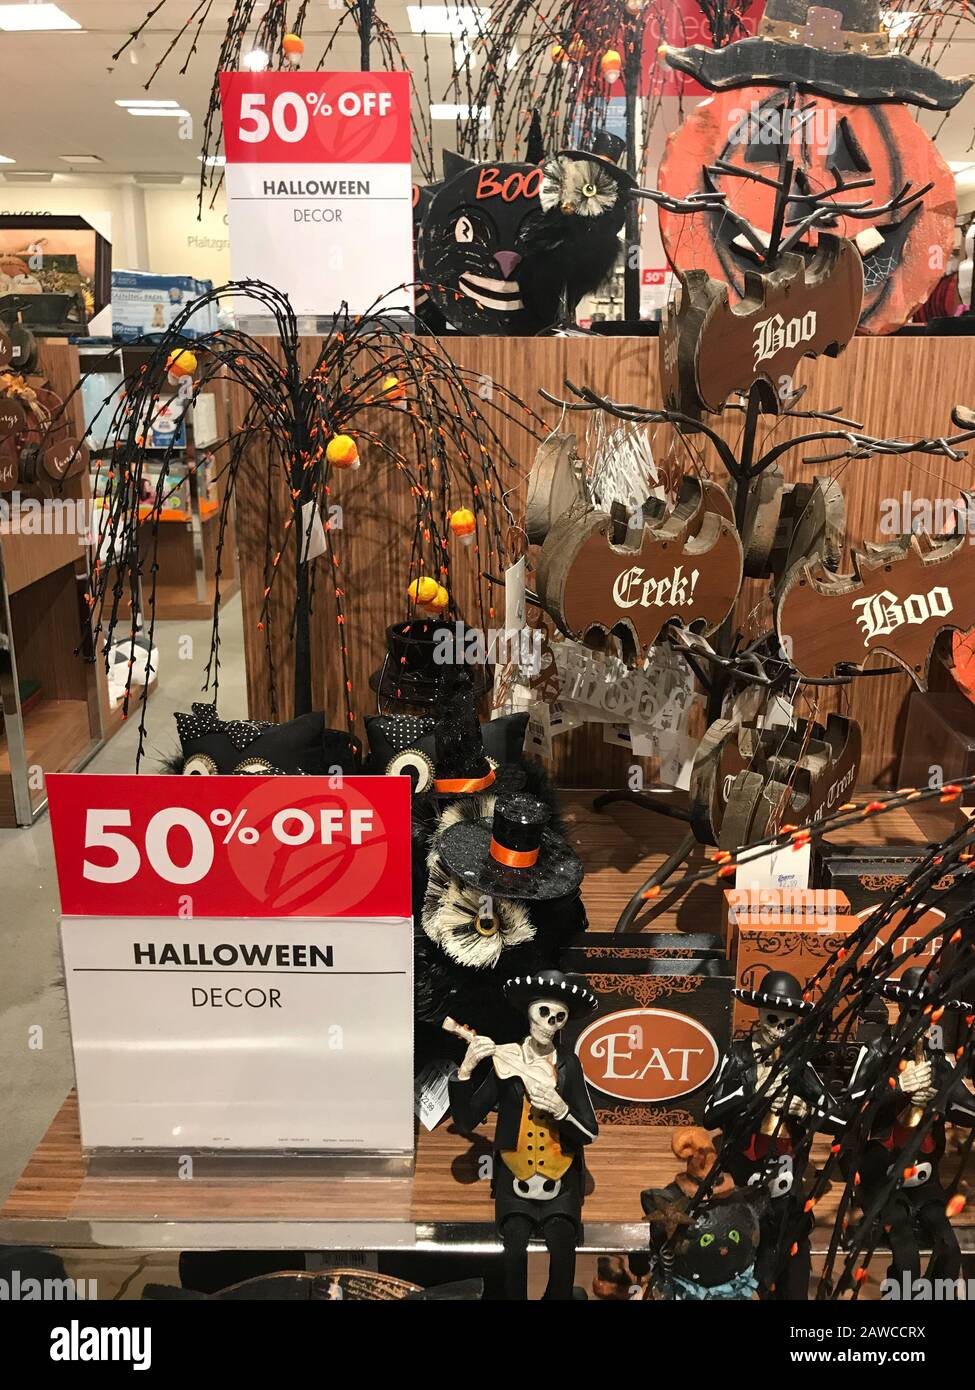 Woodbridge, NEW JERSEY / ÉTATS-UNIS - 17 octobre 2018: Les décorations d'Halloween sont exposées et à vendre dans un grand magasin local Banque D'Images